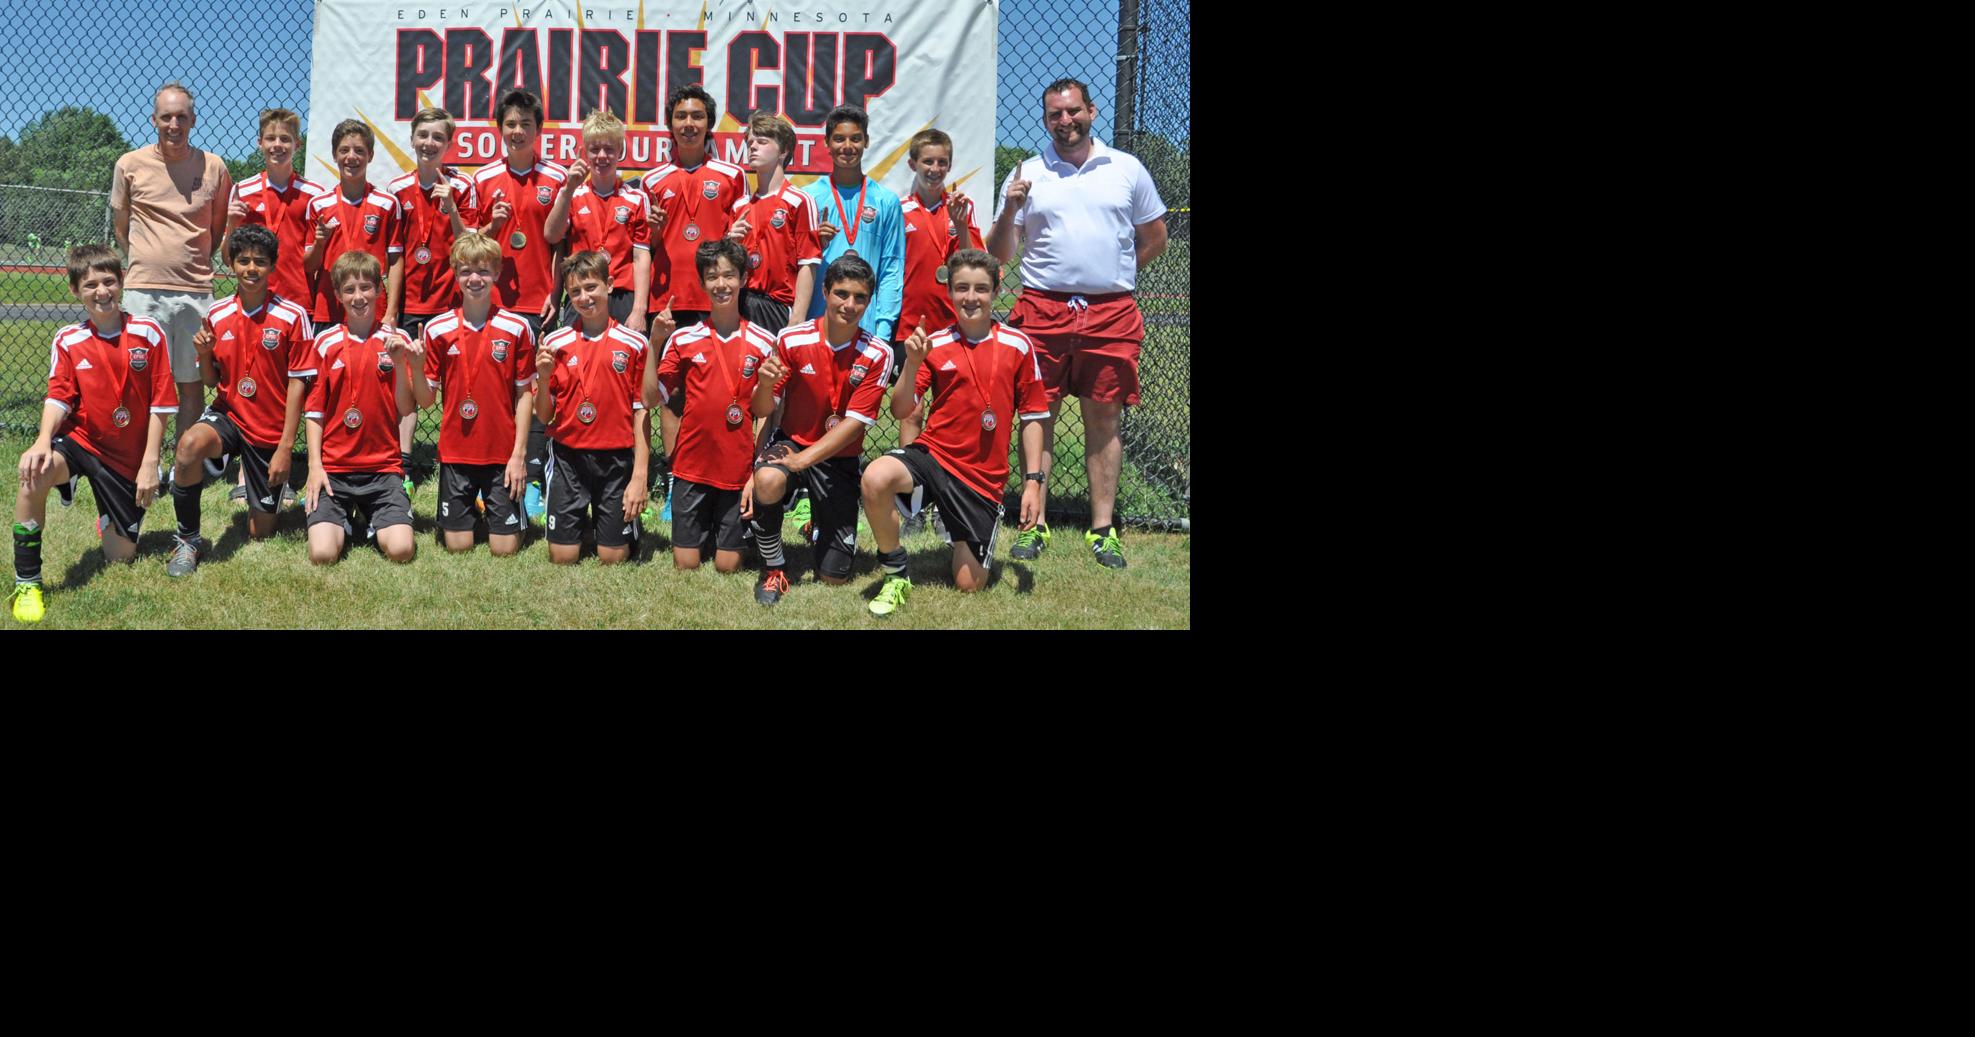 Eden Prairie Soccer Club